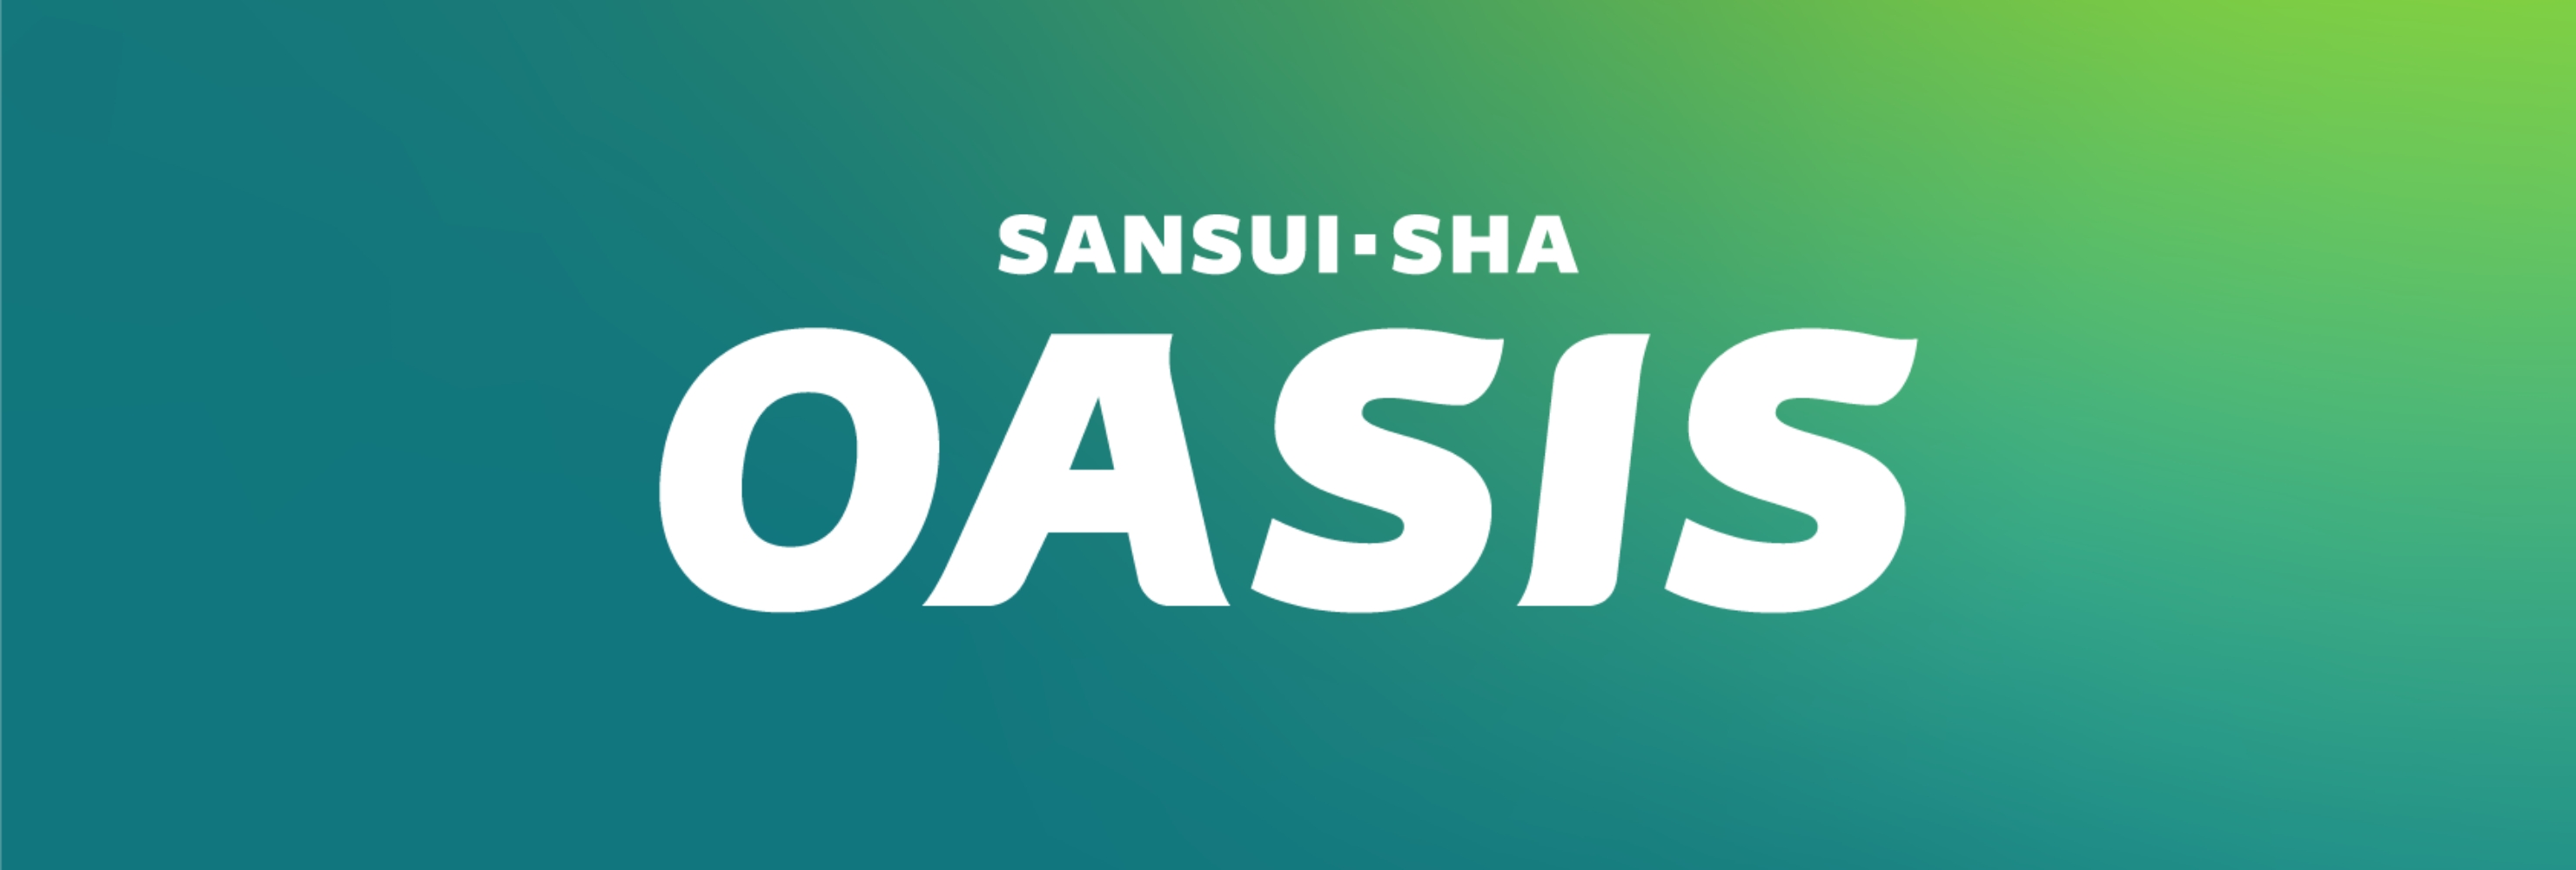 SANSUI-SHA OASIS